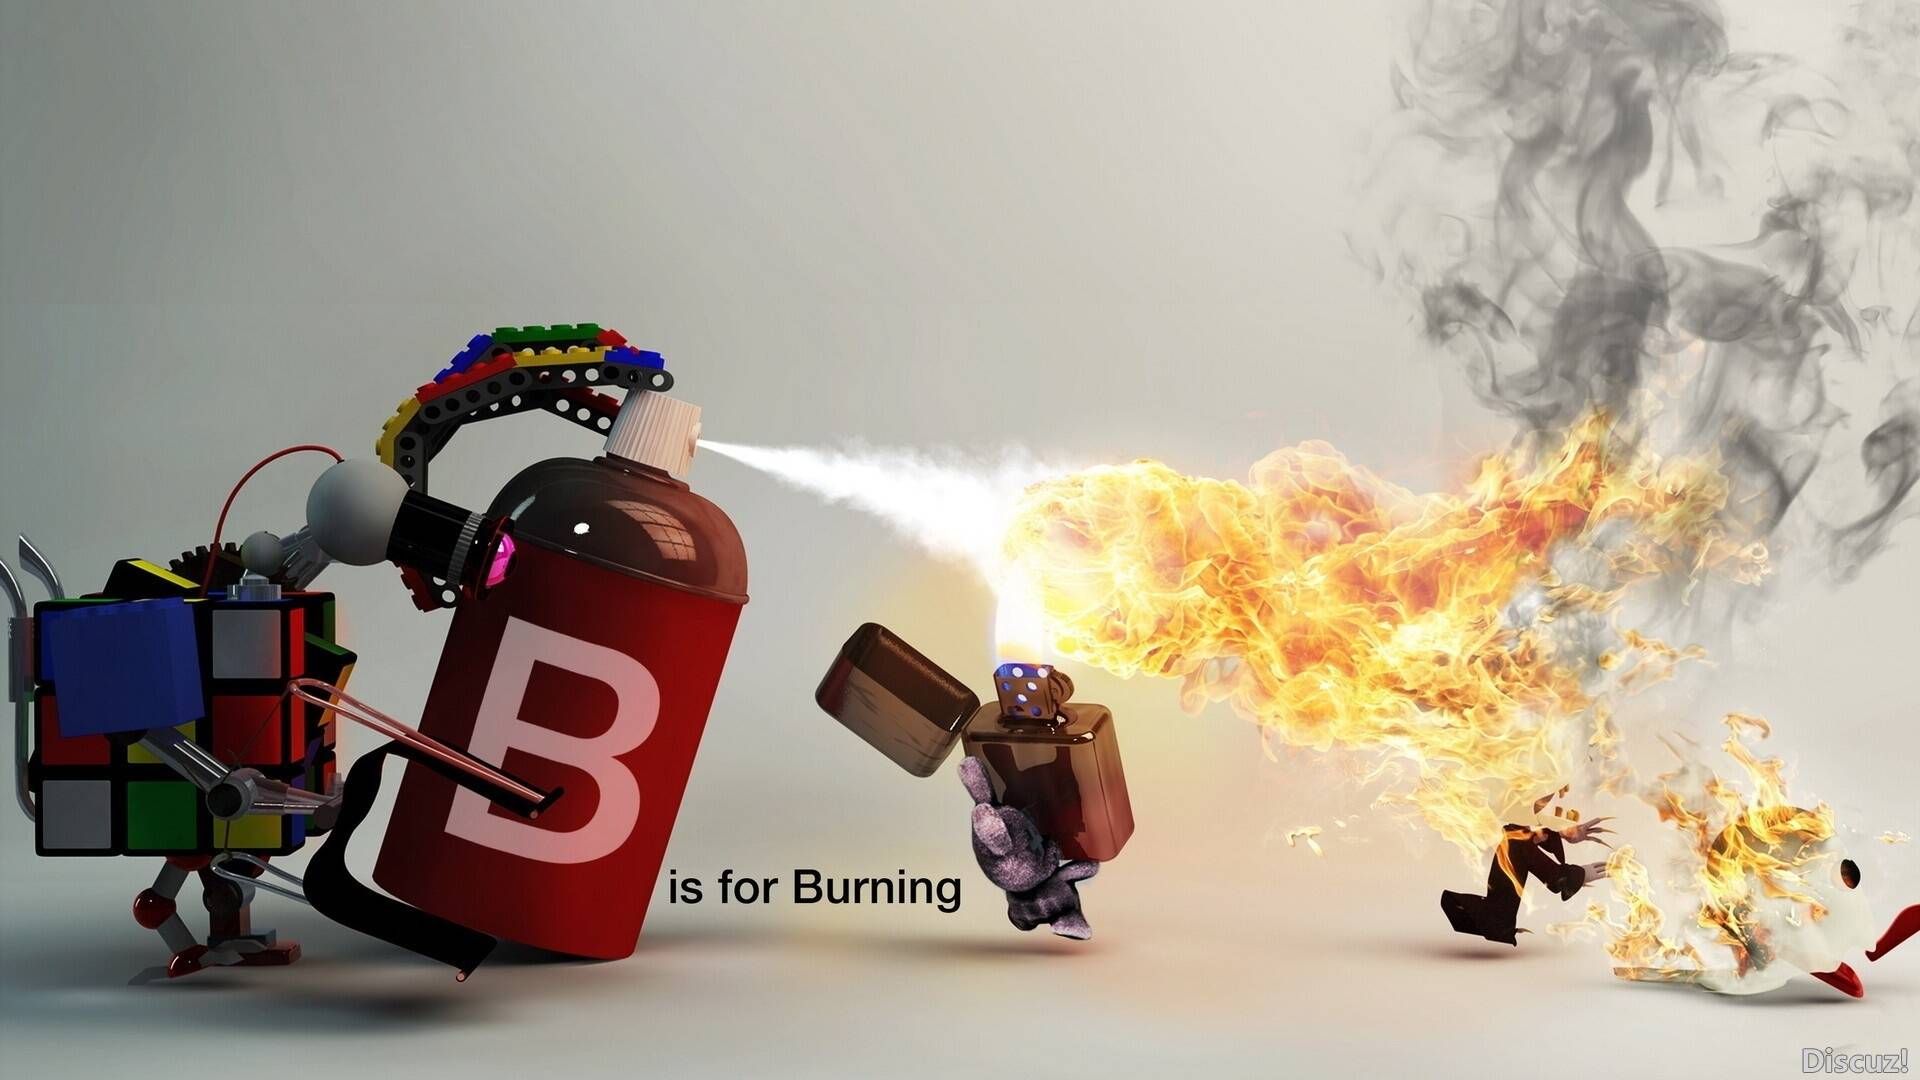 1090156-illustration-LEGO-fire-Toy-rabbits-burning-spray-zippo.jpg